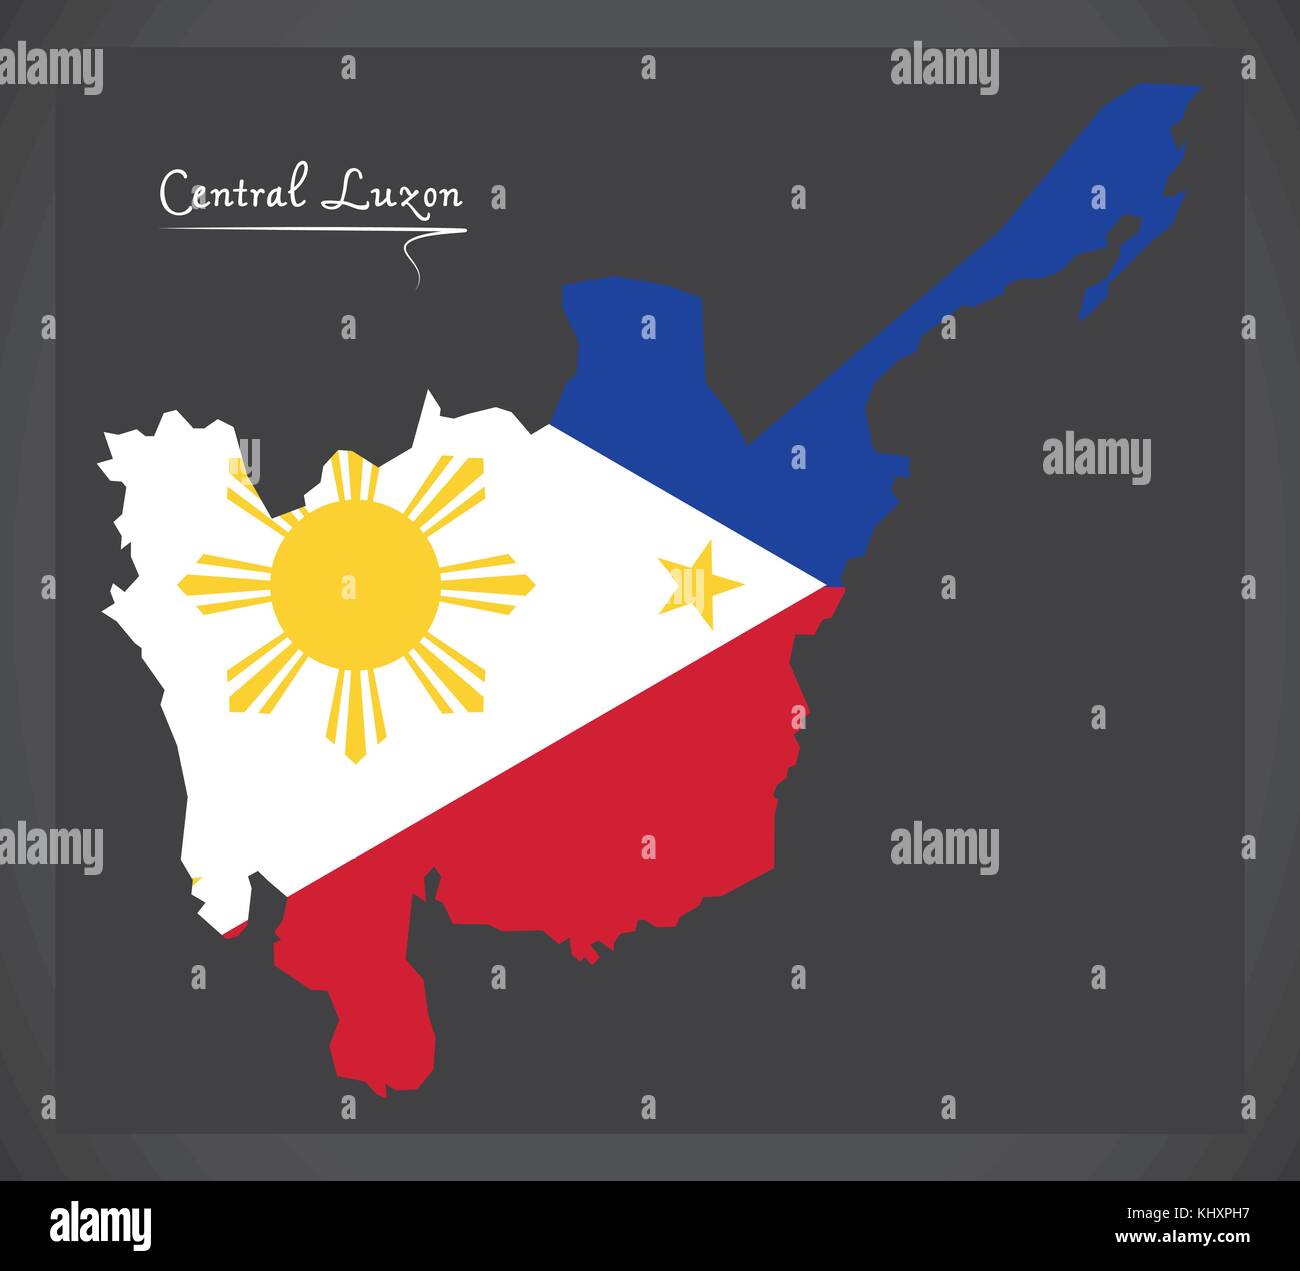 Luzon Centrale mappa delle Filippine con philippine bandiera nazionale illustrazione Illustrazione Vettoriale